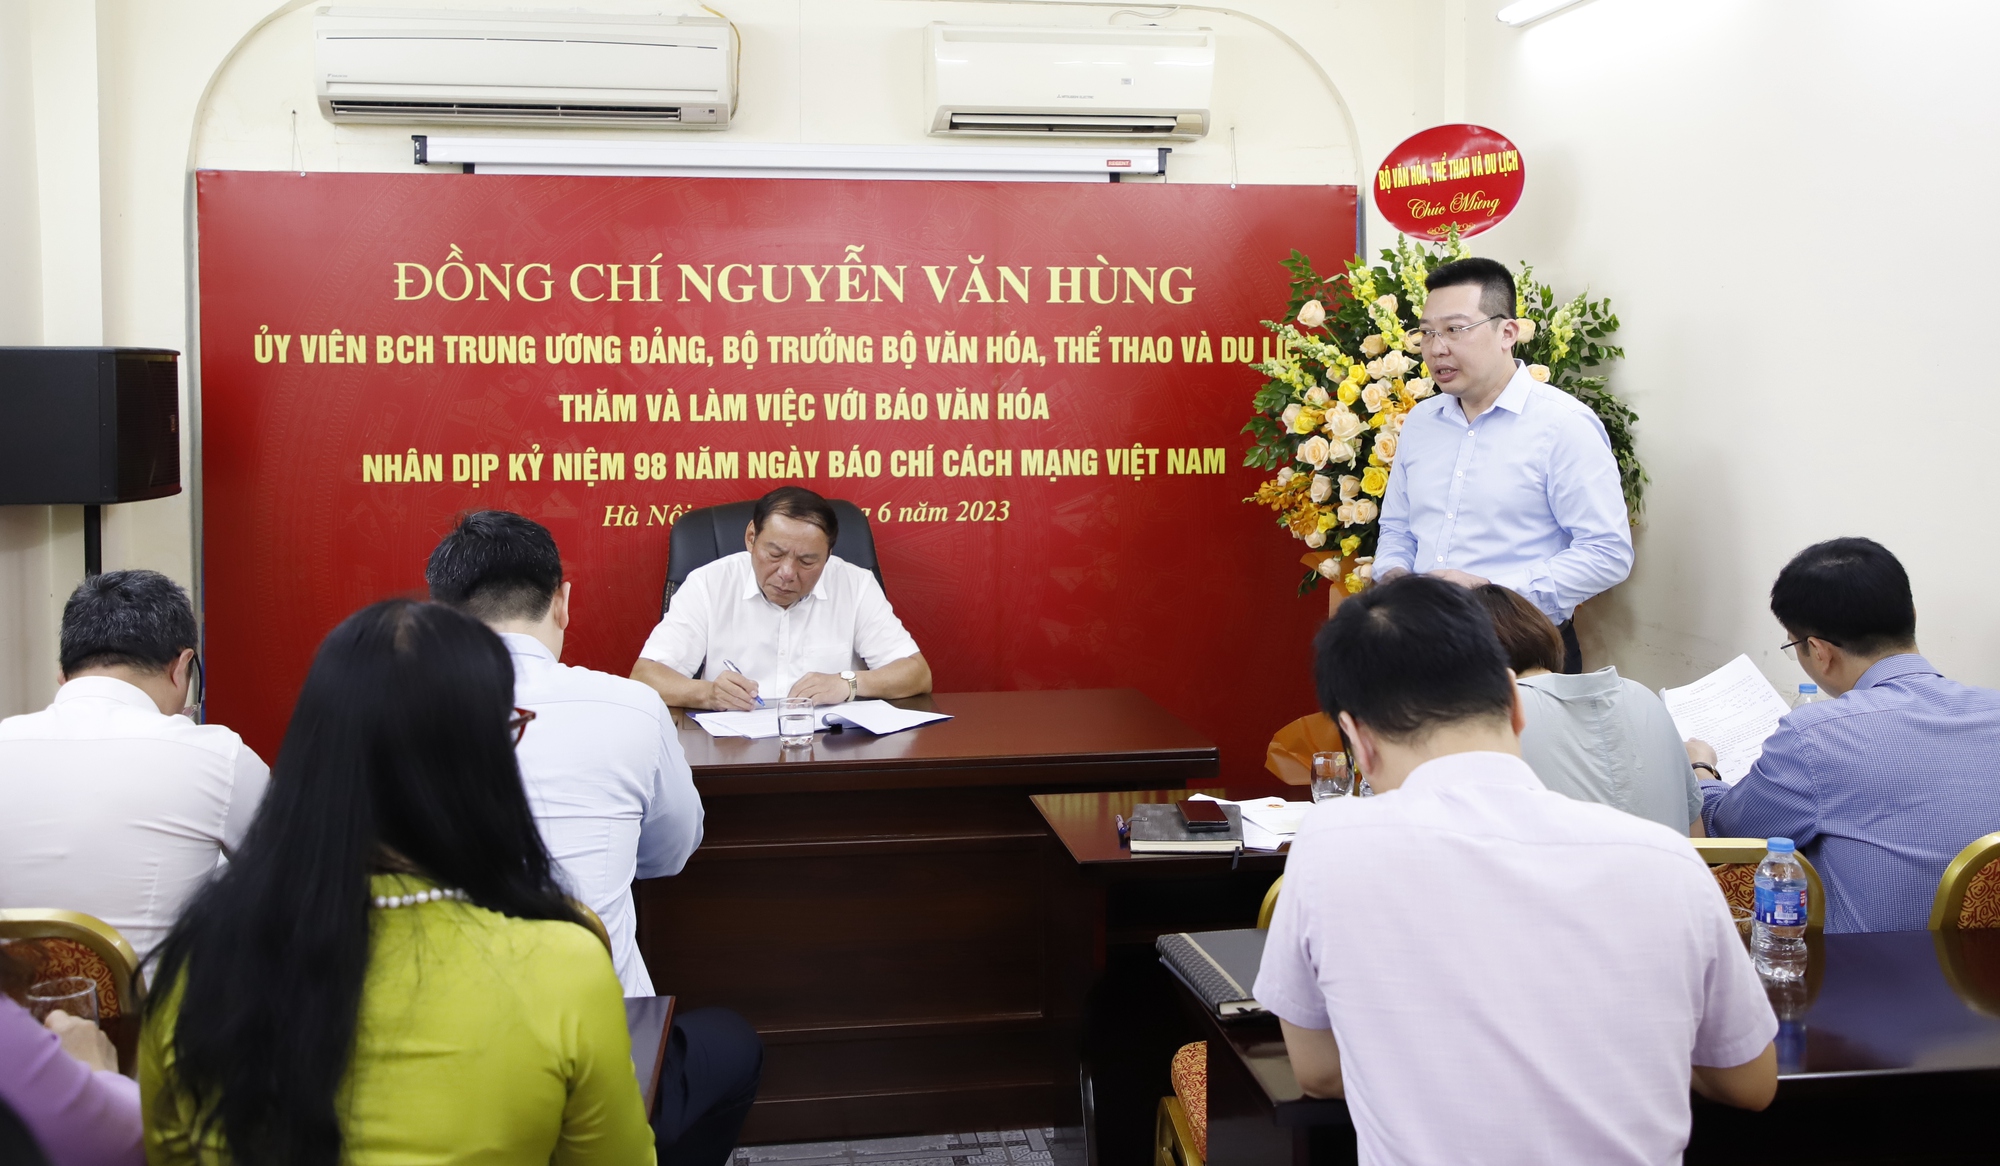 Bộ trưởng Nguyễn Văn Hùng: Báo chí phải đi trước, mở đường, tạo dư luận đồng thuận trong truyền thông chính sách - Ảnh 2.